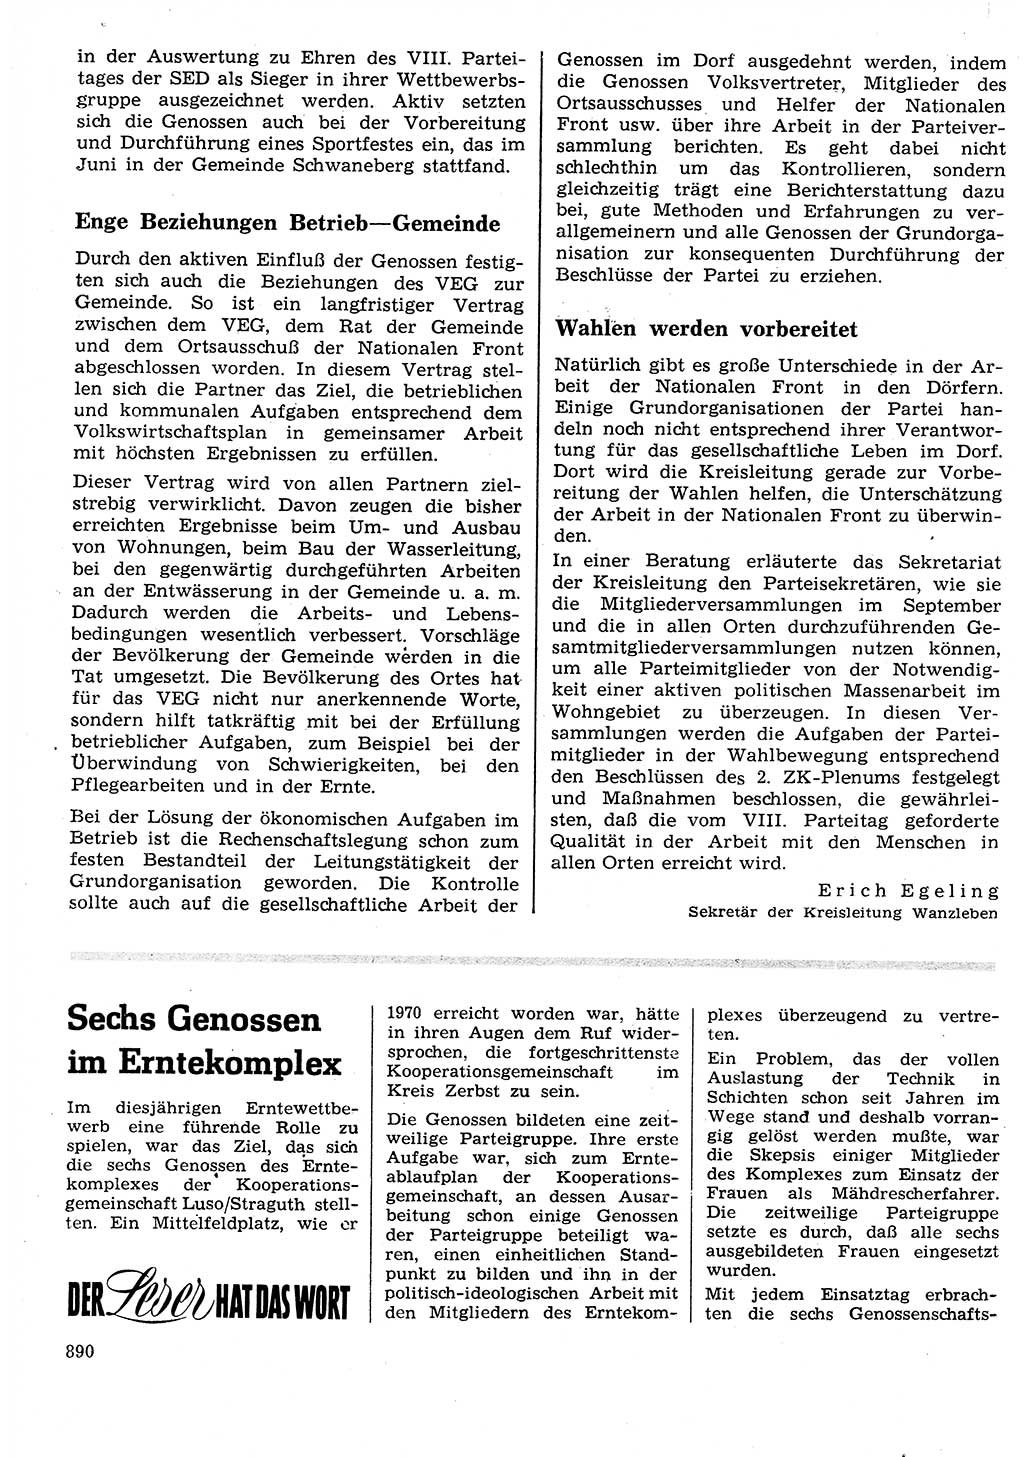 Neuer Weg (NW), Organ des Zentralkomitees (ZK) der SED (Sozialistische Einheitspartei Deutschlands) für Fragen des Parteilebens, 26. Jahrgang [Deutsche Demokratische Republik (DDR)] 1971, Seite 890 (NW ZK SED DDR 1971, S. 890)